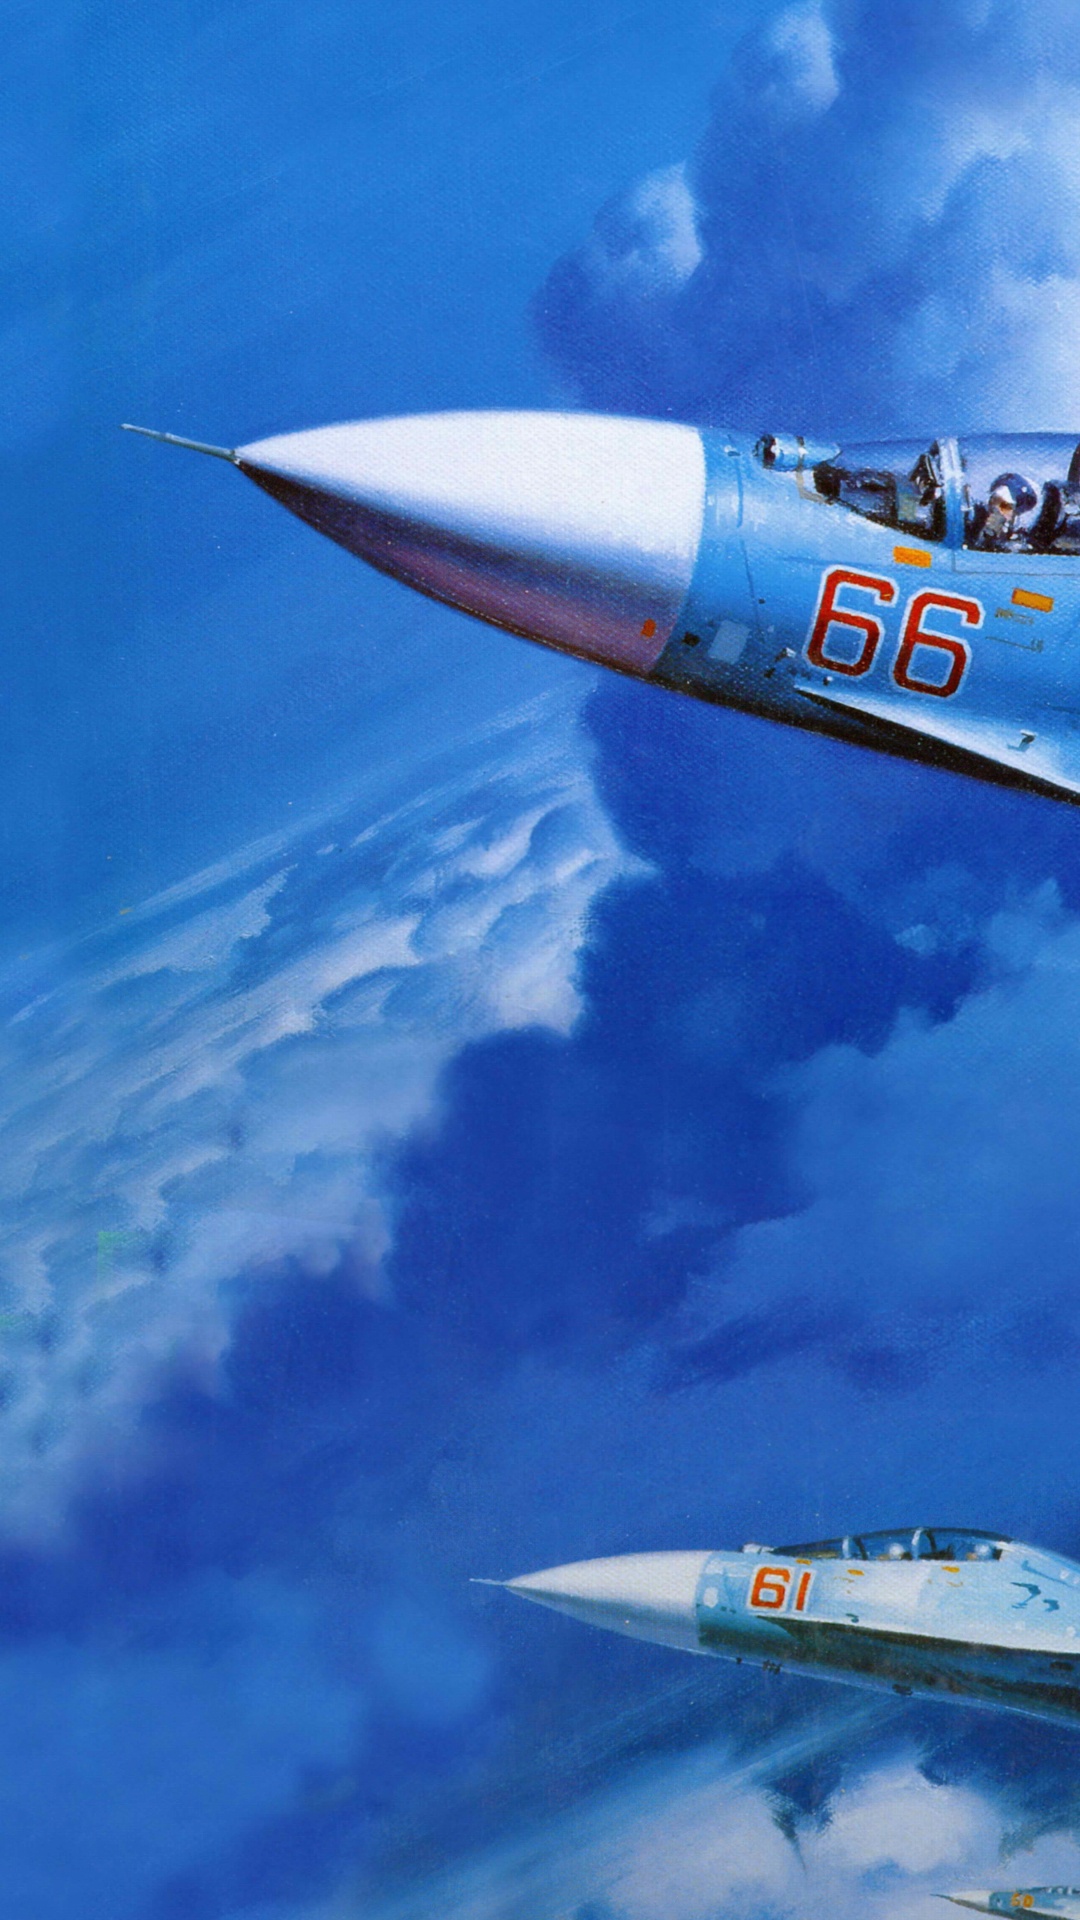 Weißes Und Blaues Düsenflugzeug Unter Blauem Himmel Tagsüber. Wallpaper in 1080x1920 Resolution